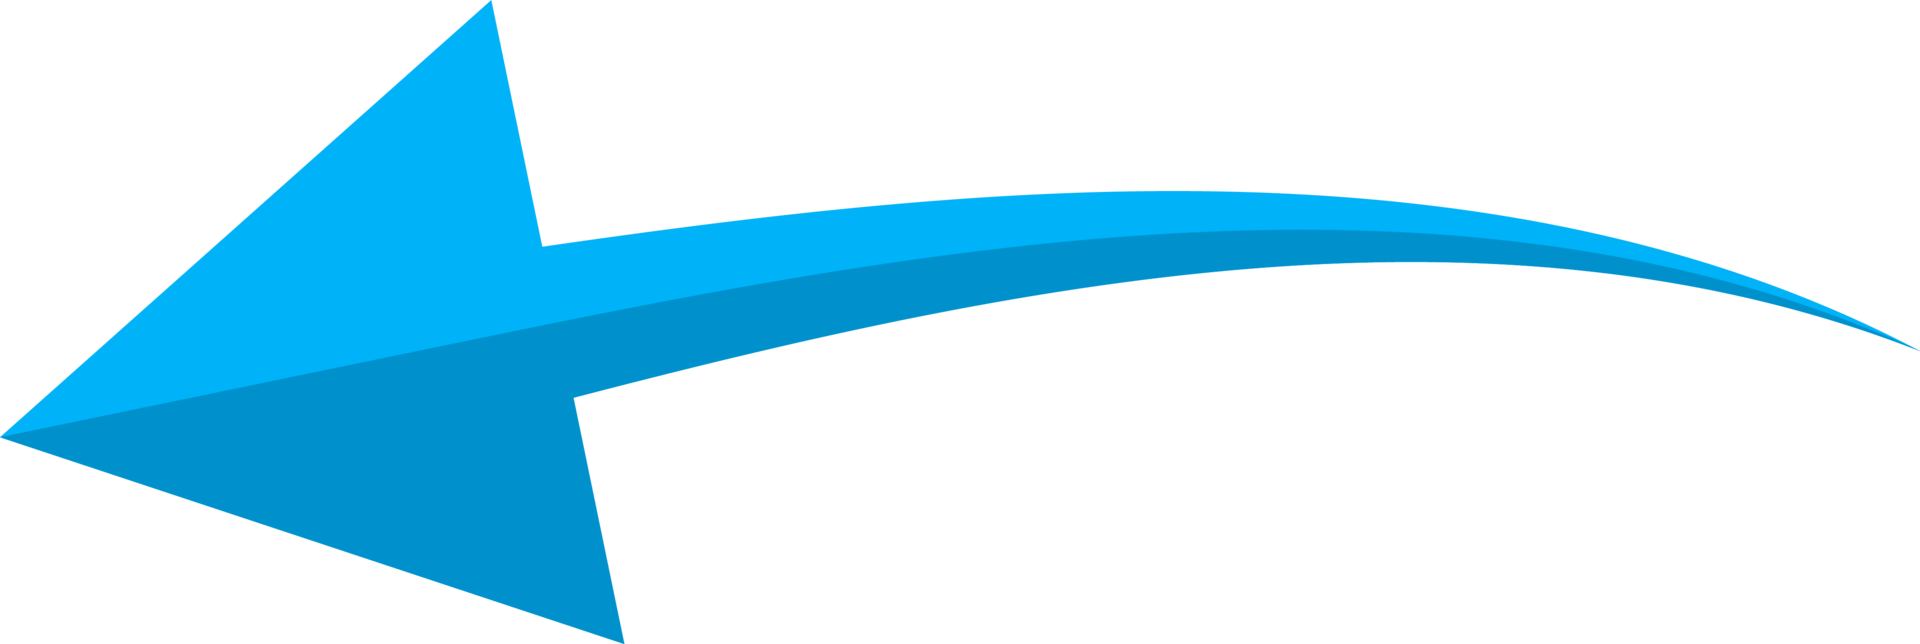 mano dibujado azul curvo flecha forma en garabatear estilo png